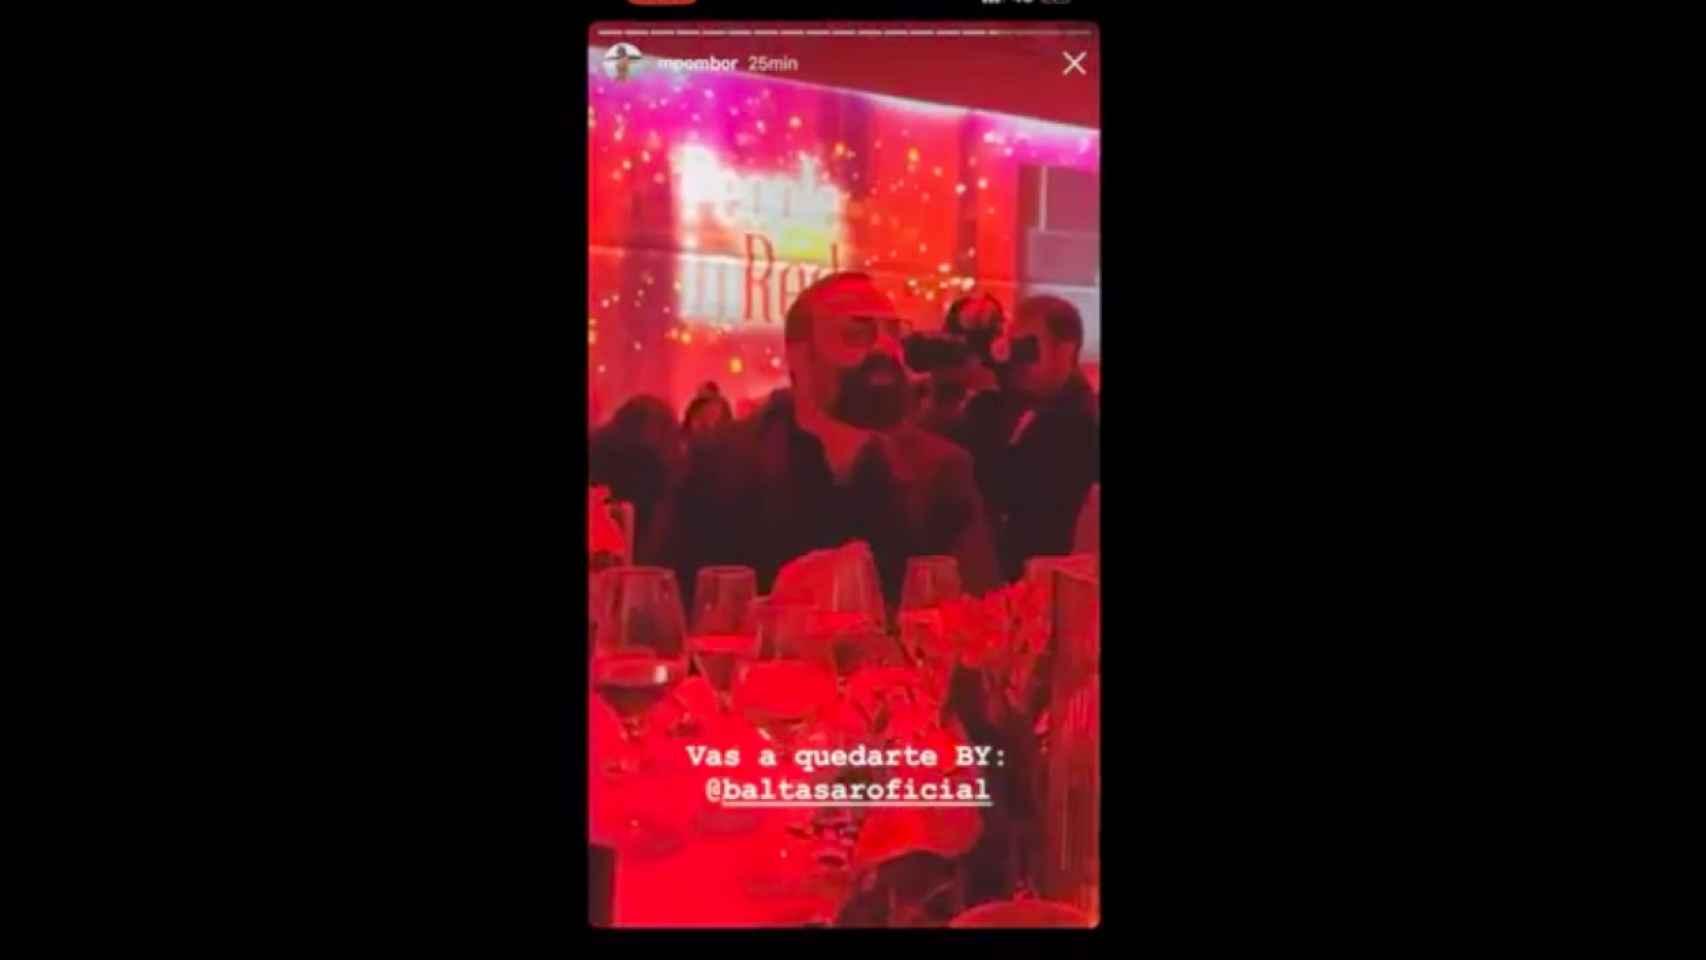 Captura de pantalla del vídeo en el que sale el invitado mofándose de Aitana / INSTAGRAM